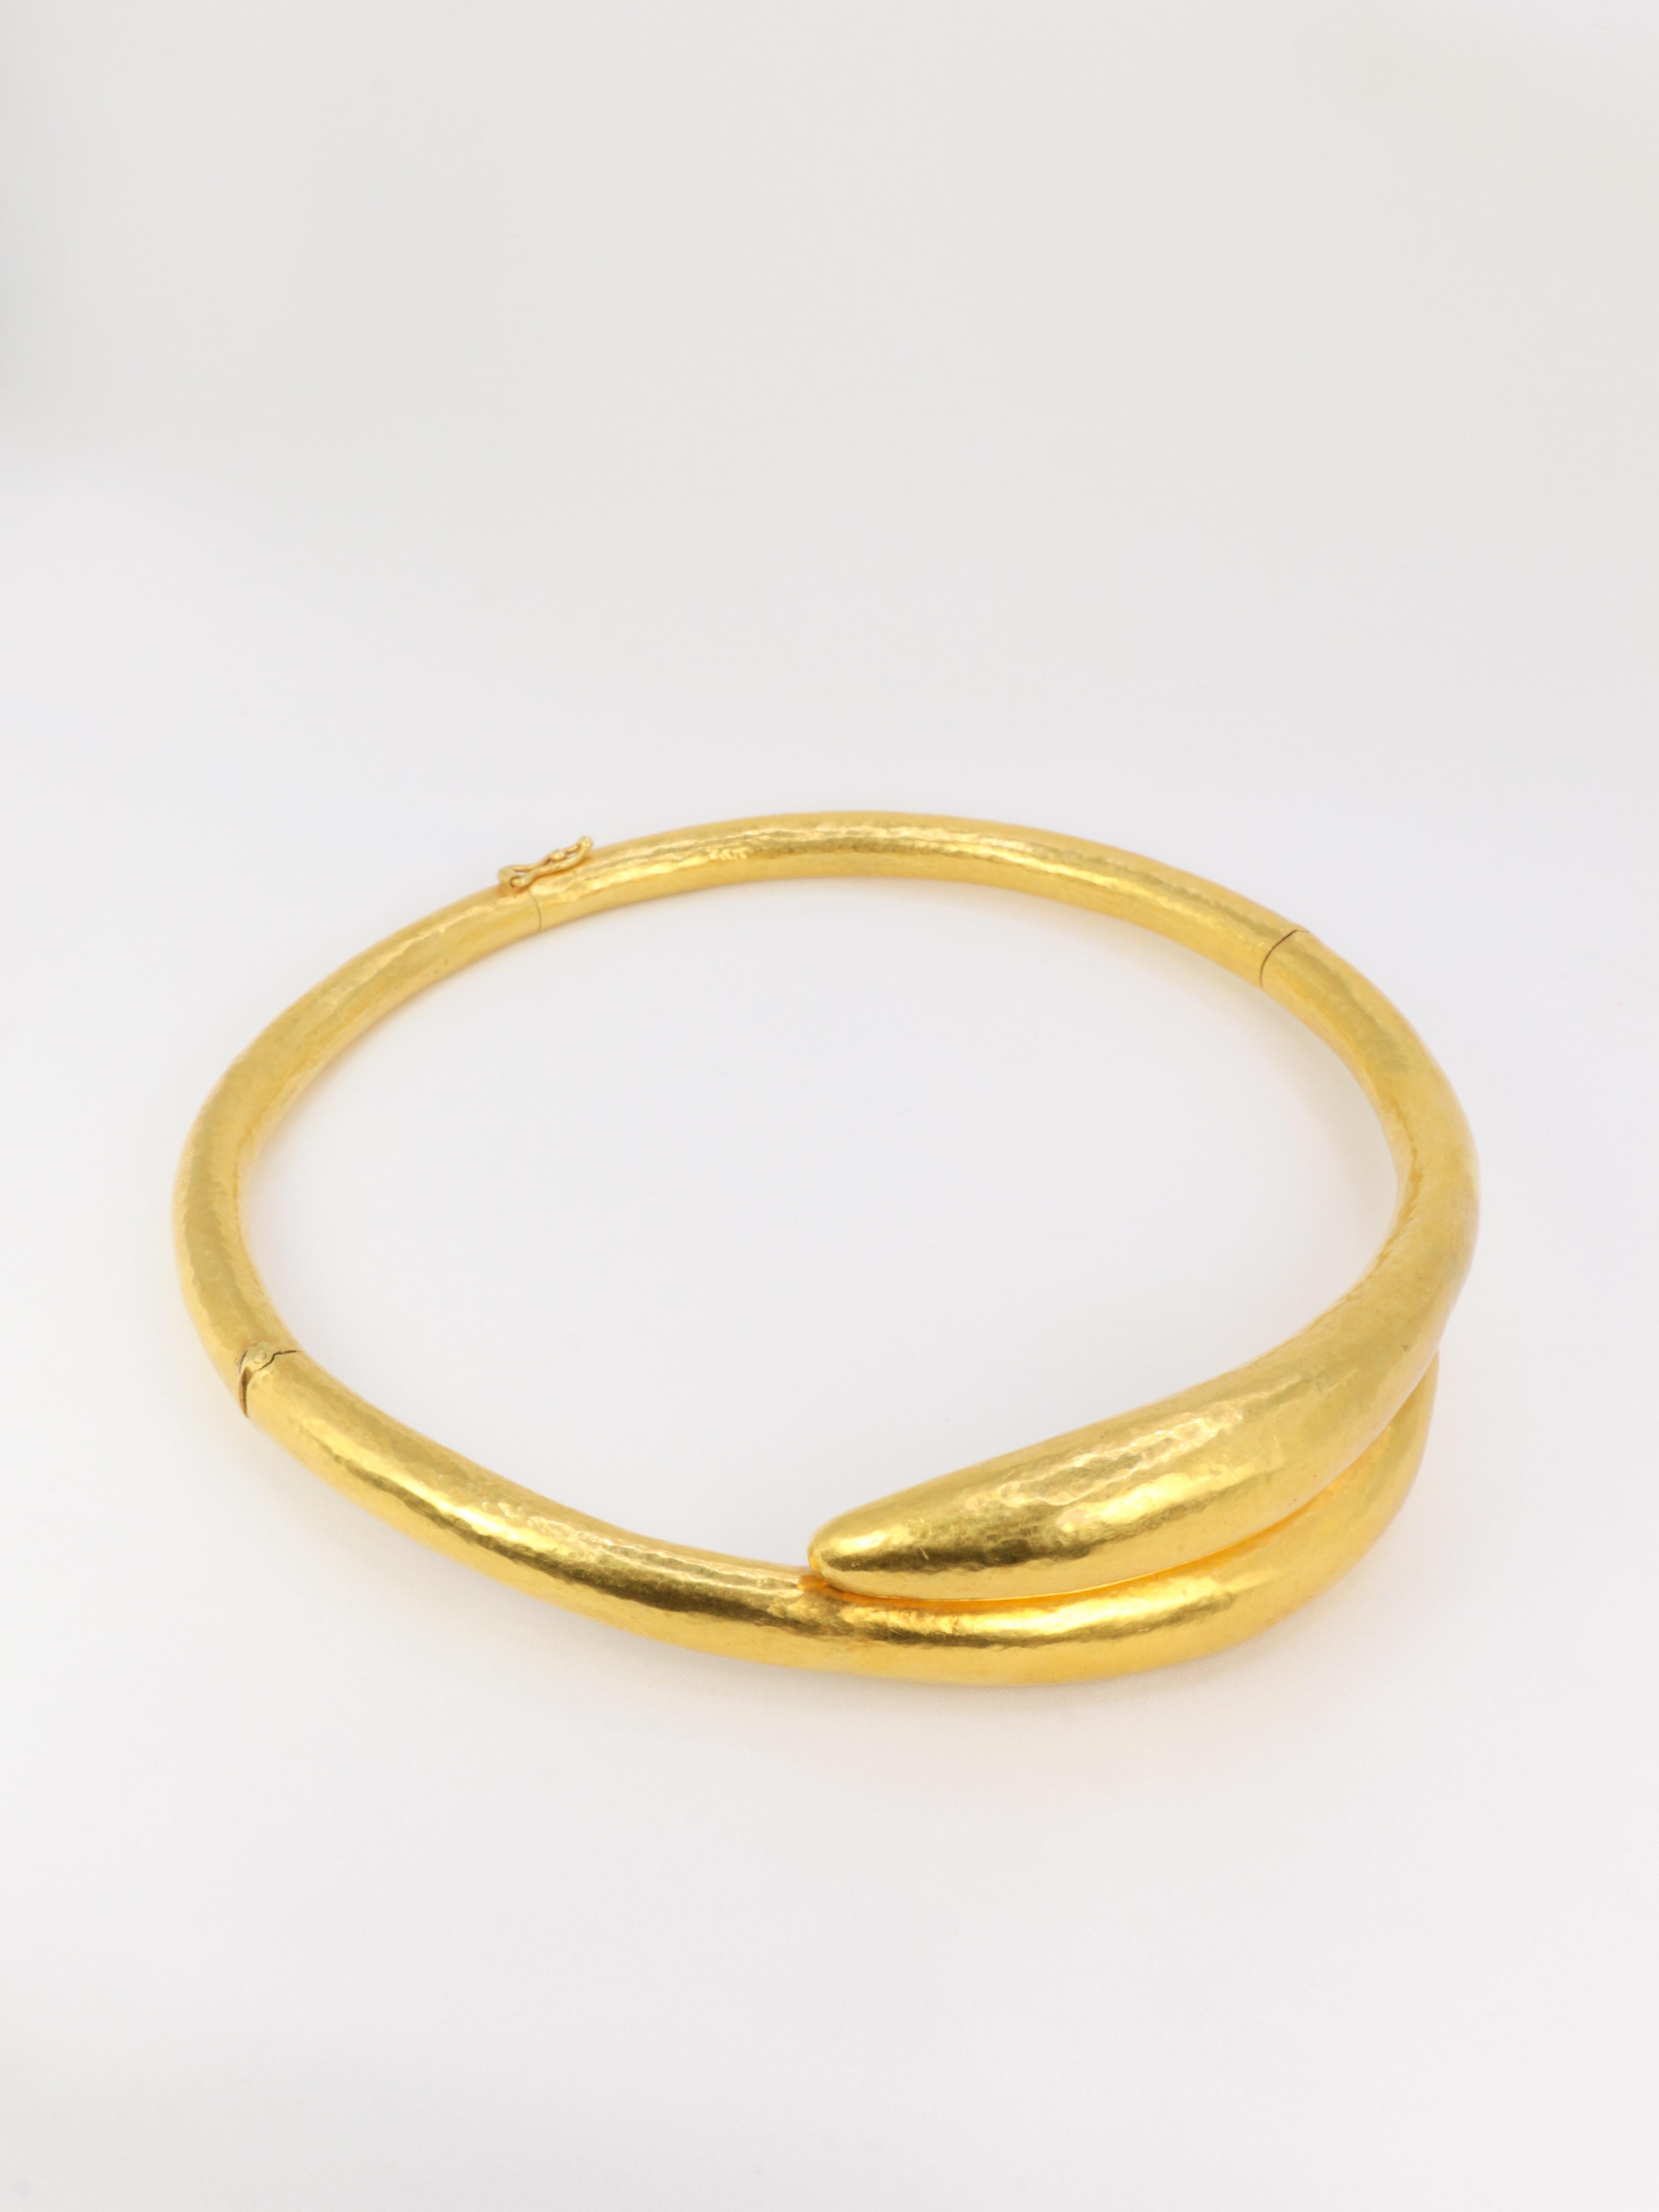 ILIA LALAOUNIS
22Kt Gelbgold, handgehämmertes Collier in Form von zwei stilisierten Schlangen, deren Köpfe sich überlappen, gestempelt 